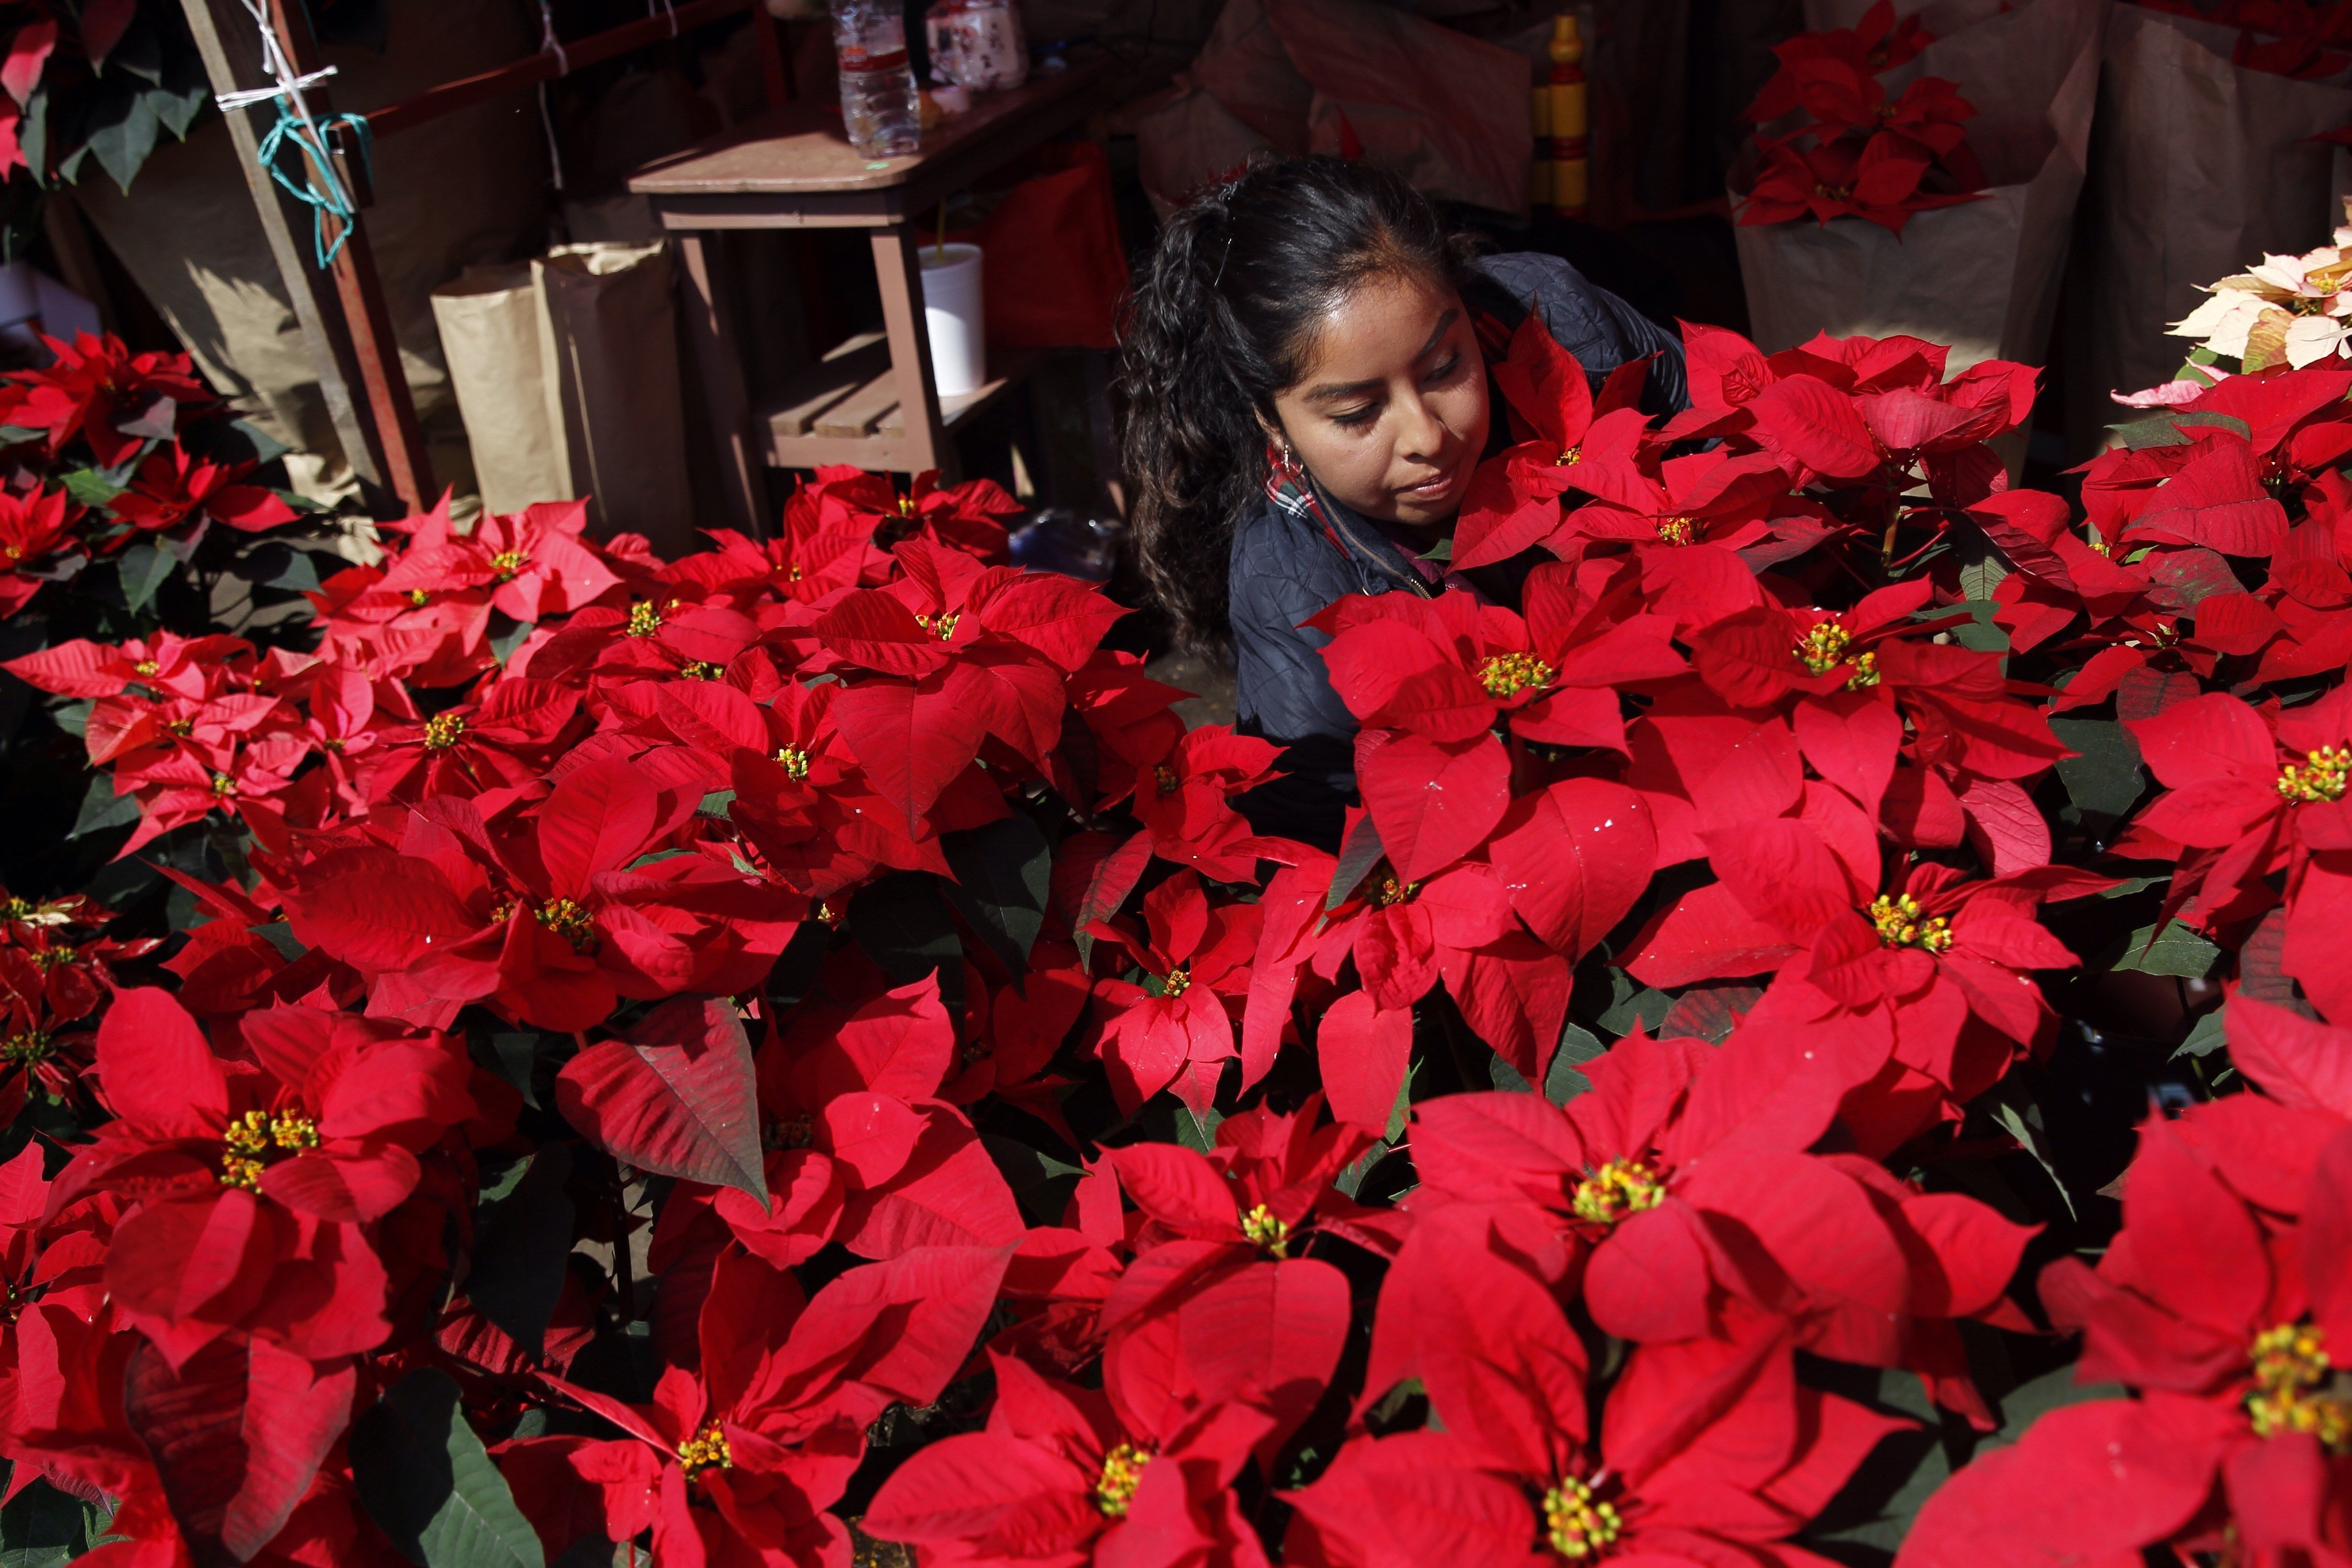  Flor de Nochebuena, símbolo navideño que cubre de rojo millones de hogares